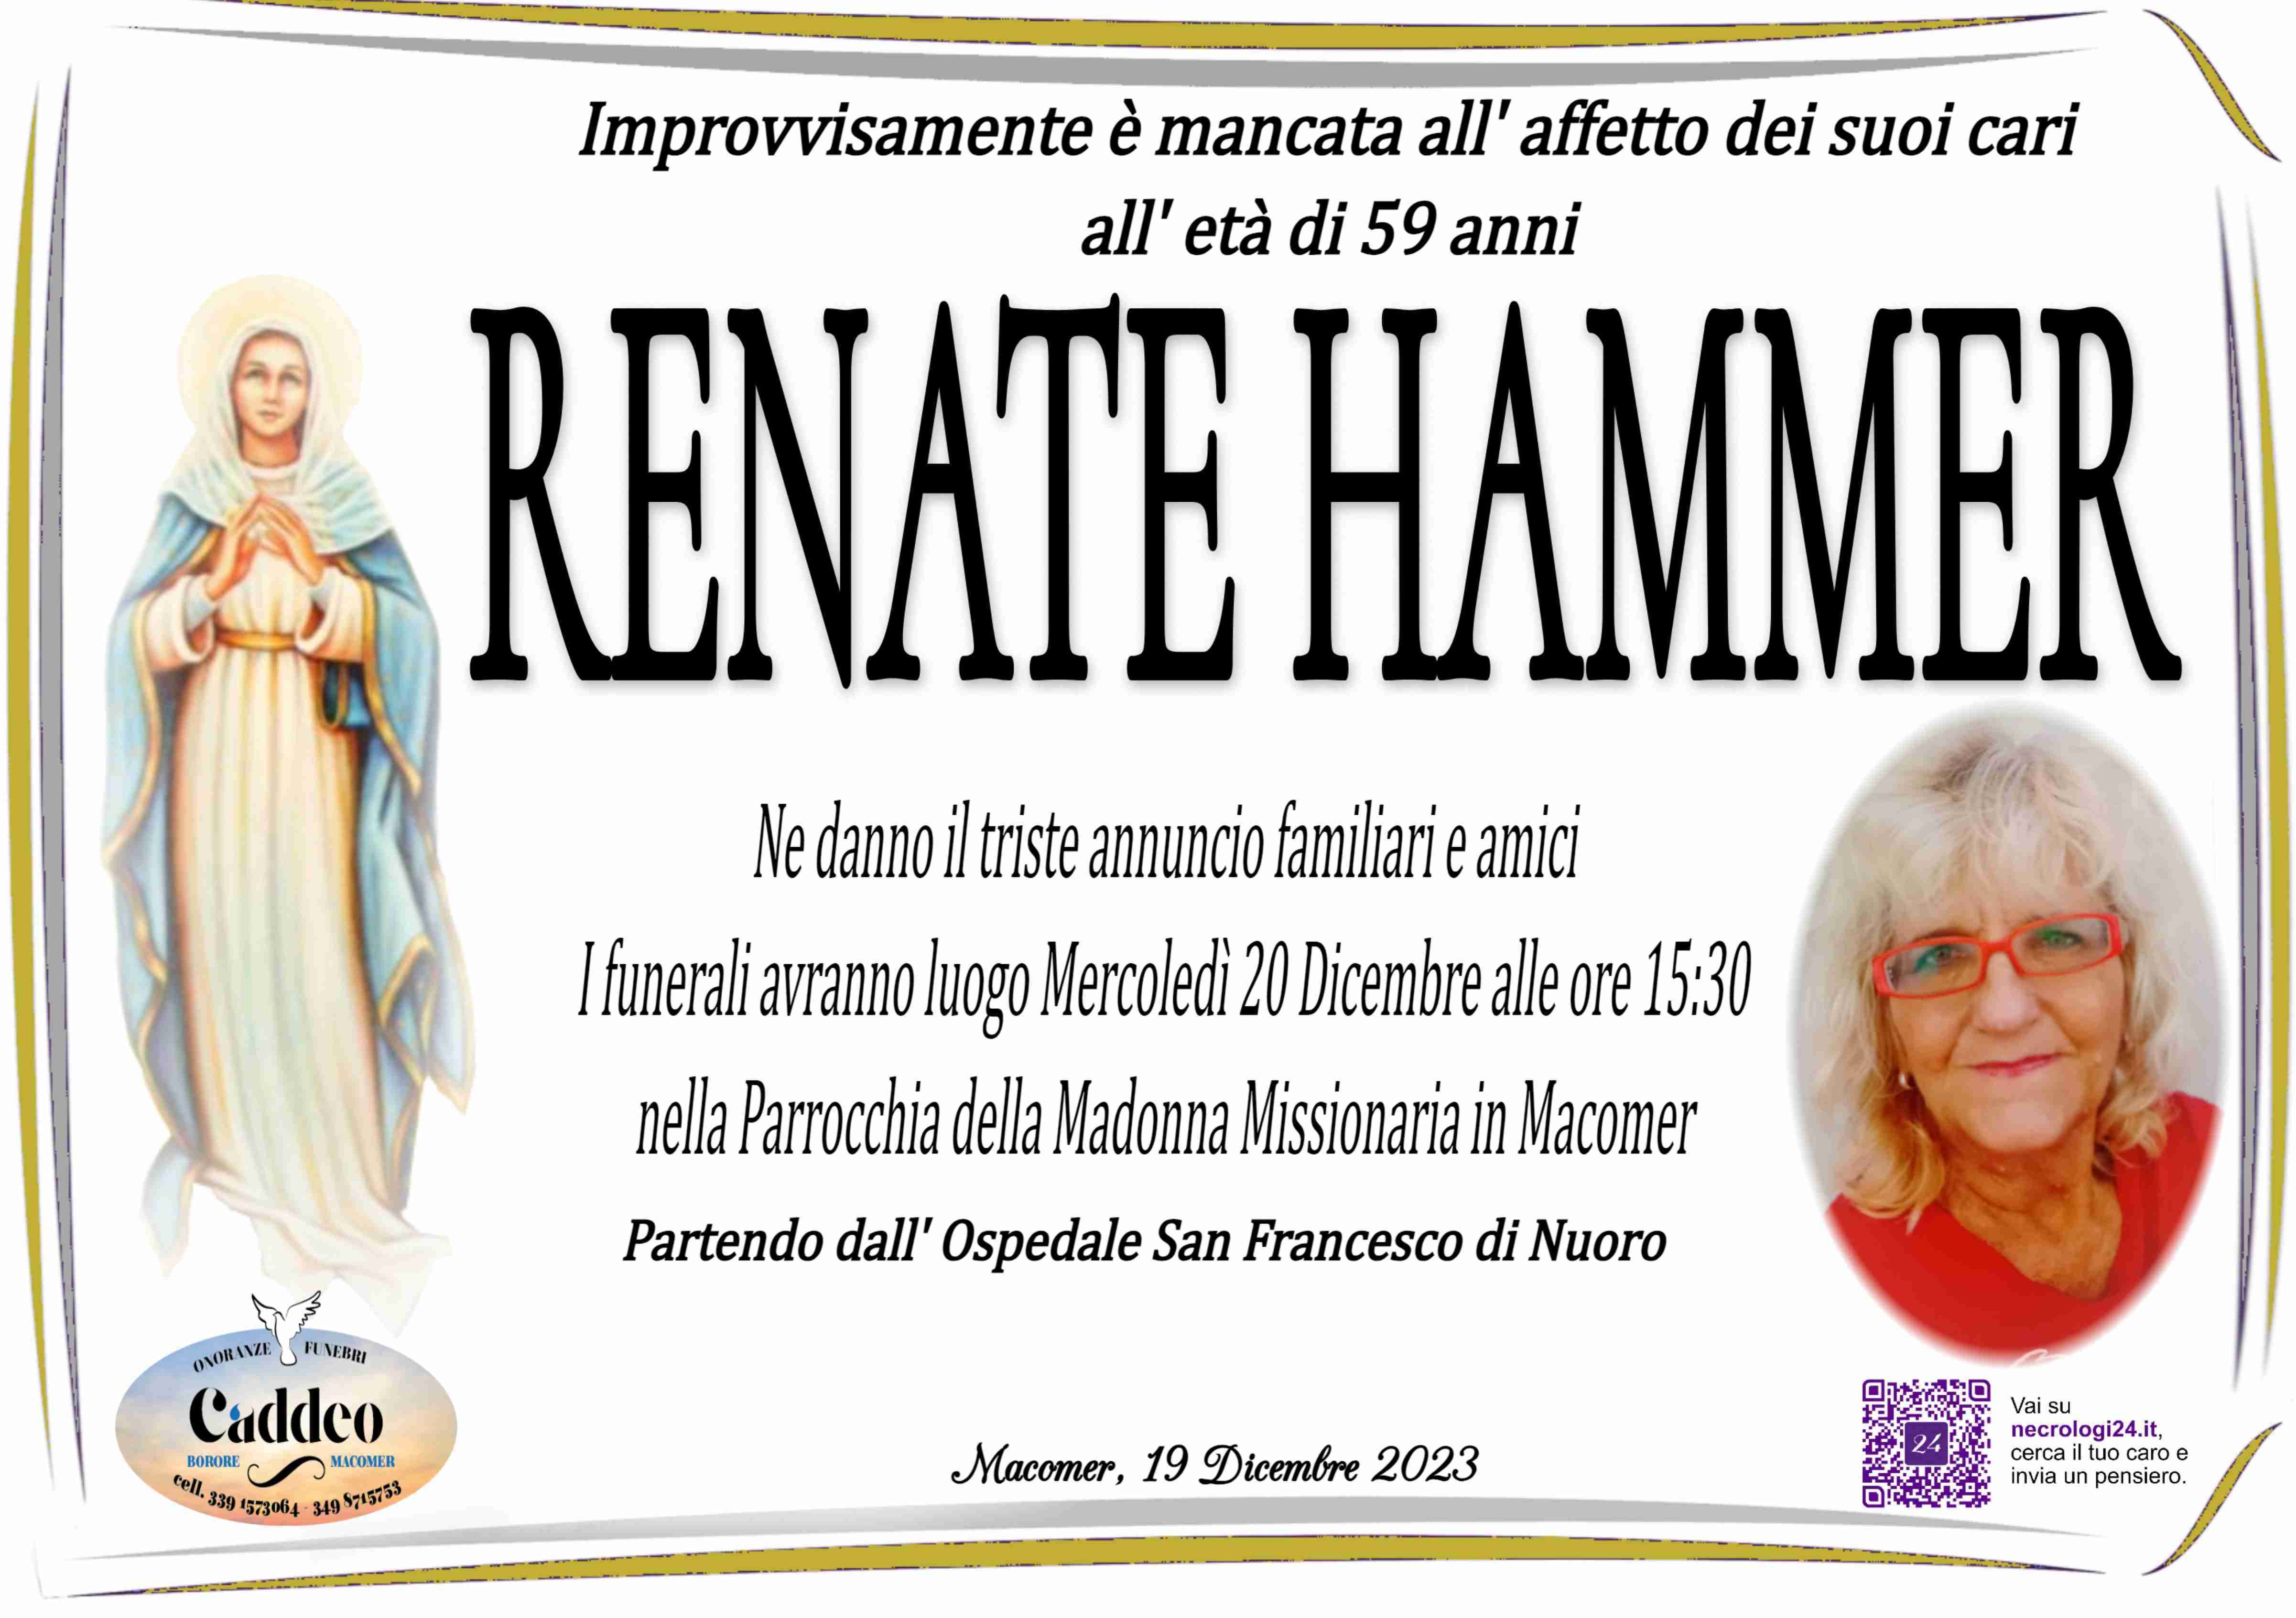 Renate Hammer